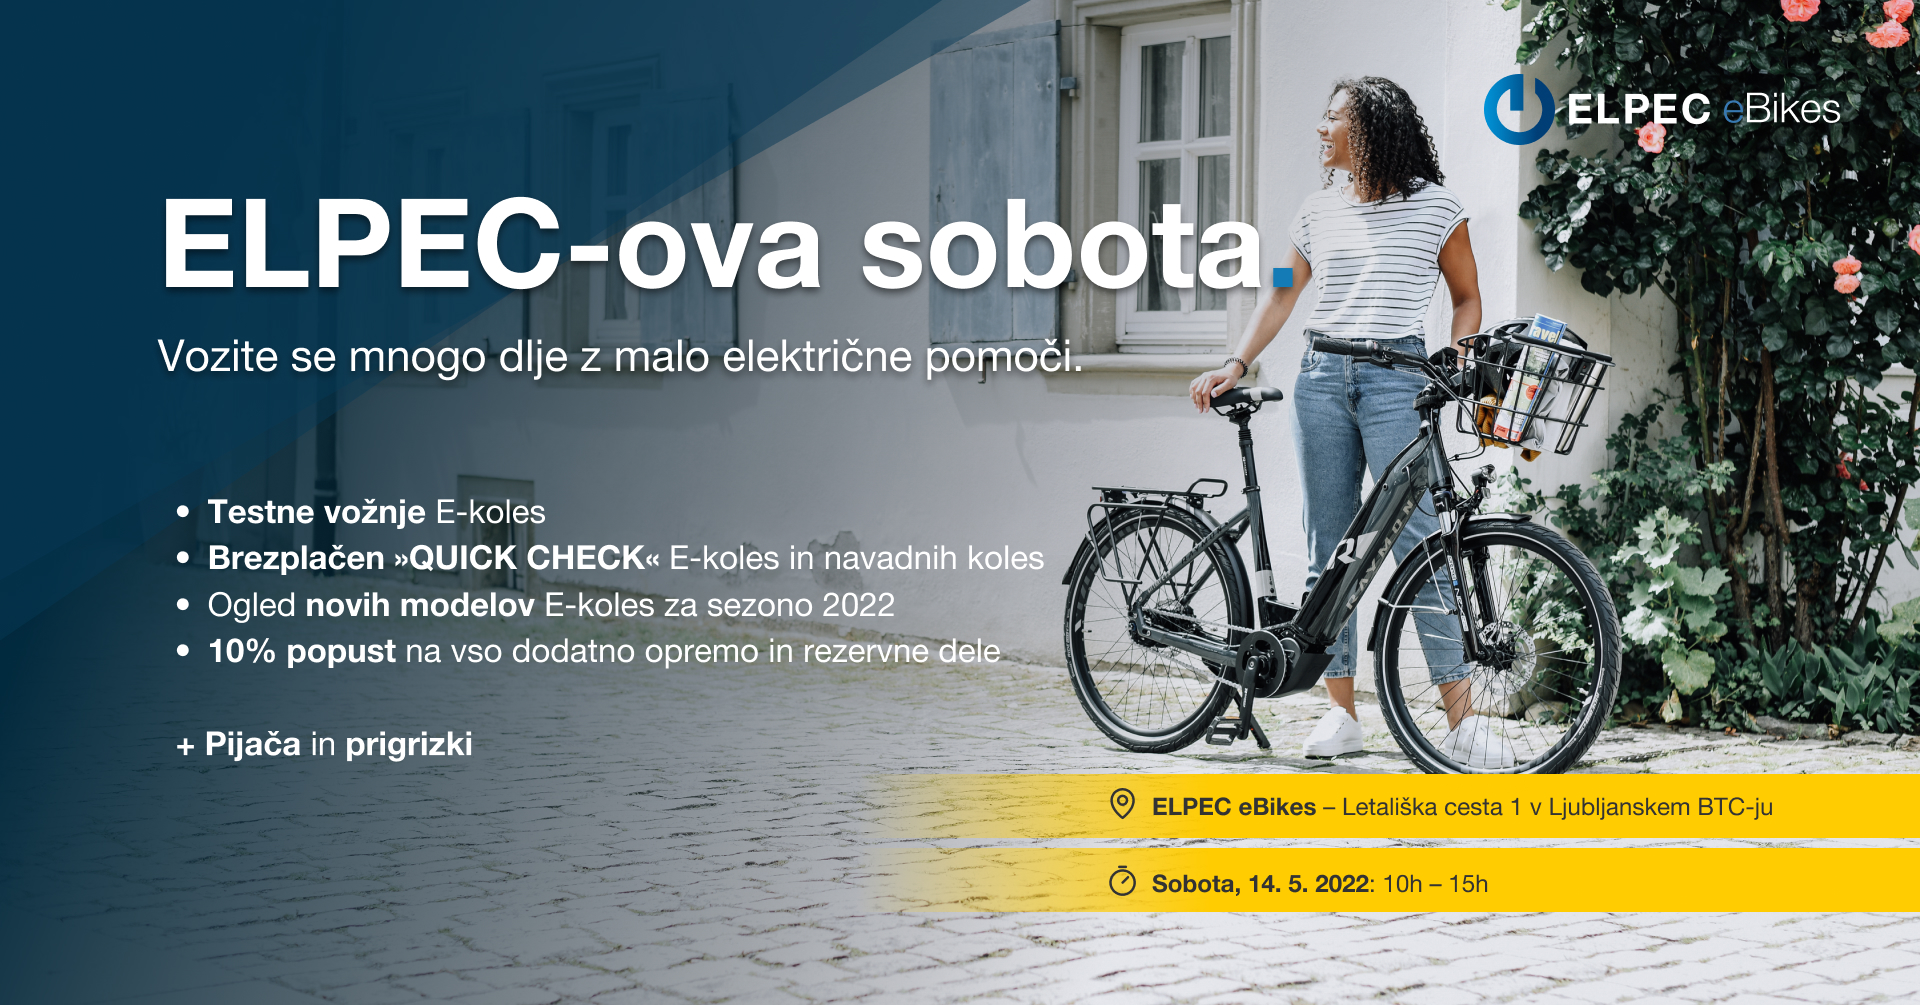 ELPEC eBikes - nakup električnega kolesa - Avtokampi.si